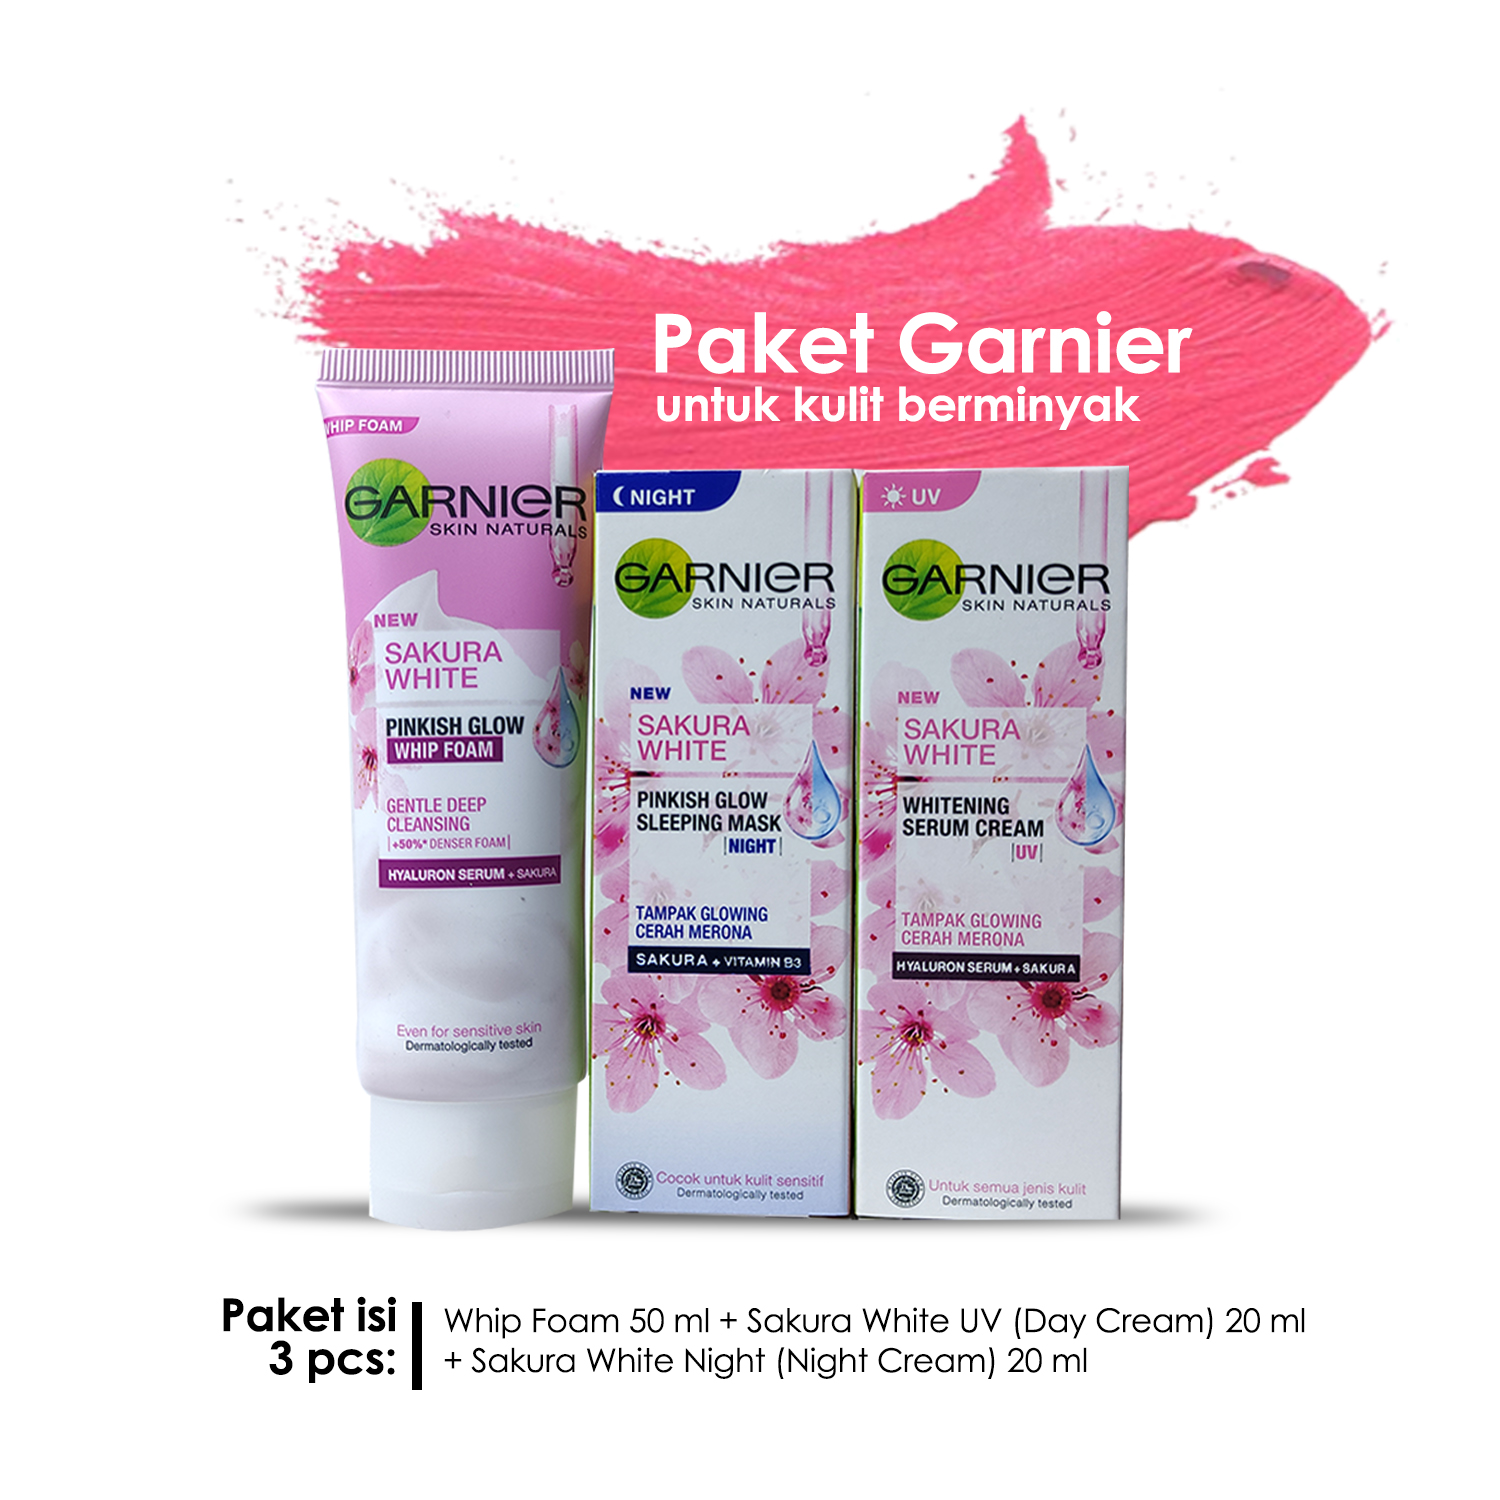 Paket Garnier Sakura 3 pcs (Whip Foam 50 ml, Sakura White UV 20 ml, Sakura White Night 20 ml) untuk Kulit Normal Berminyak